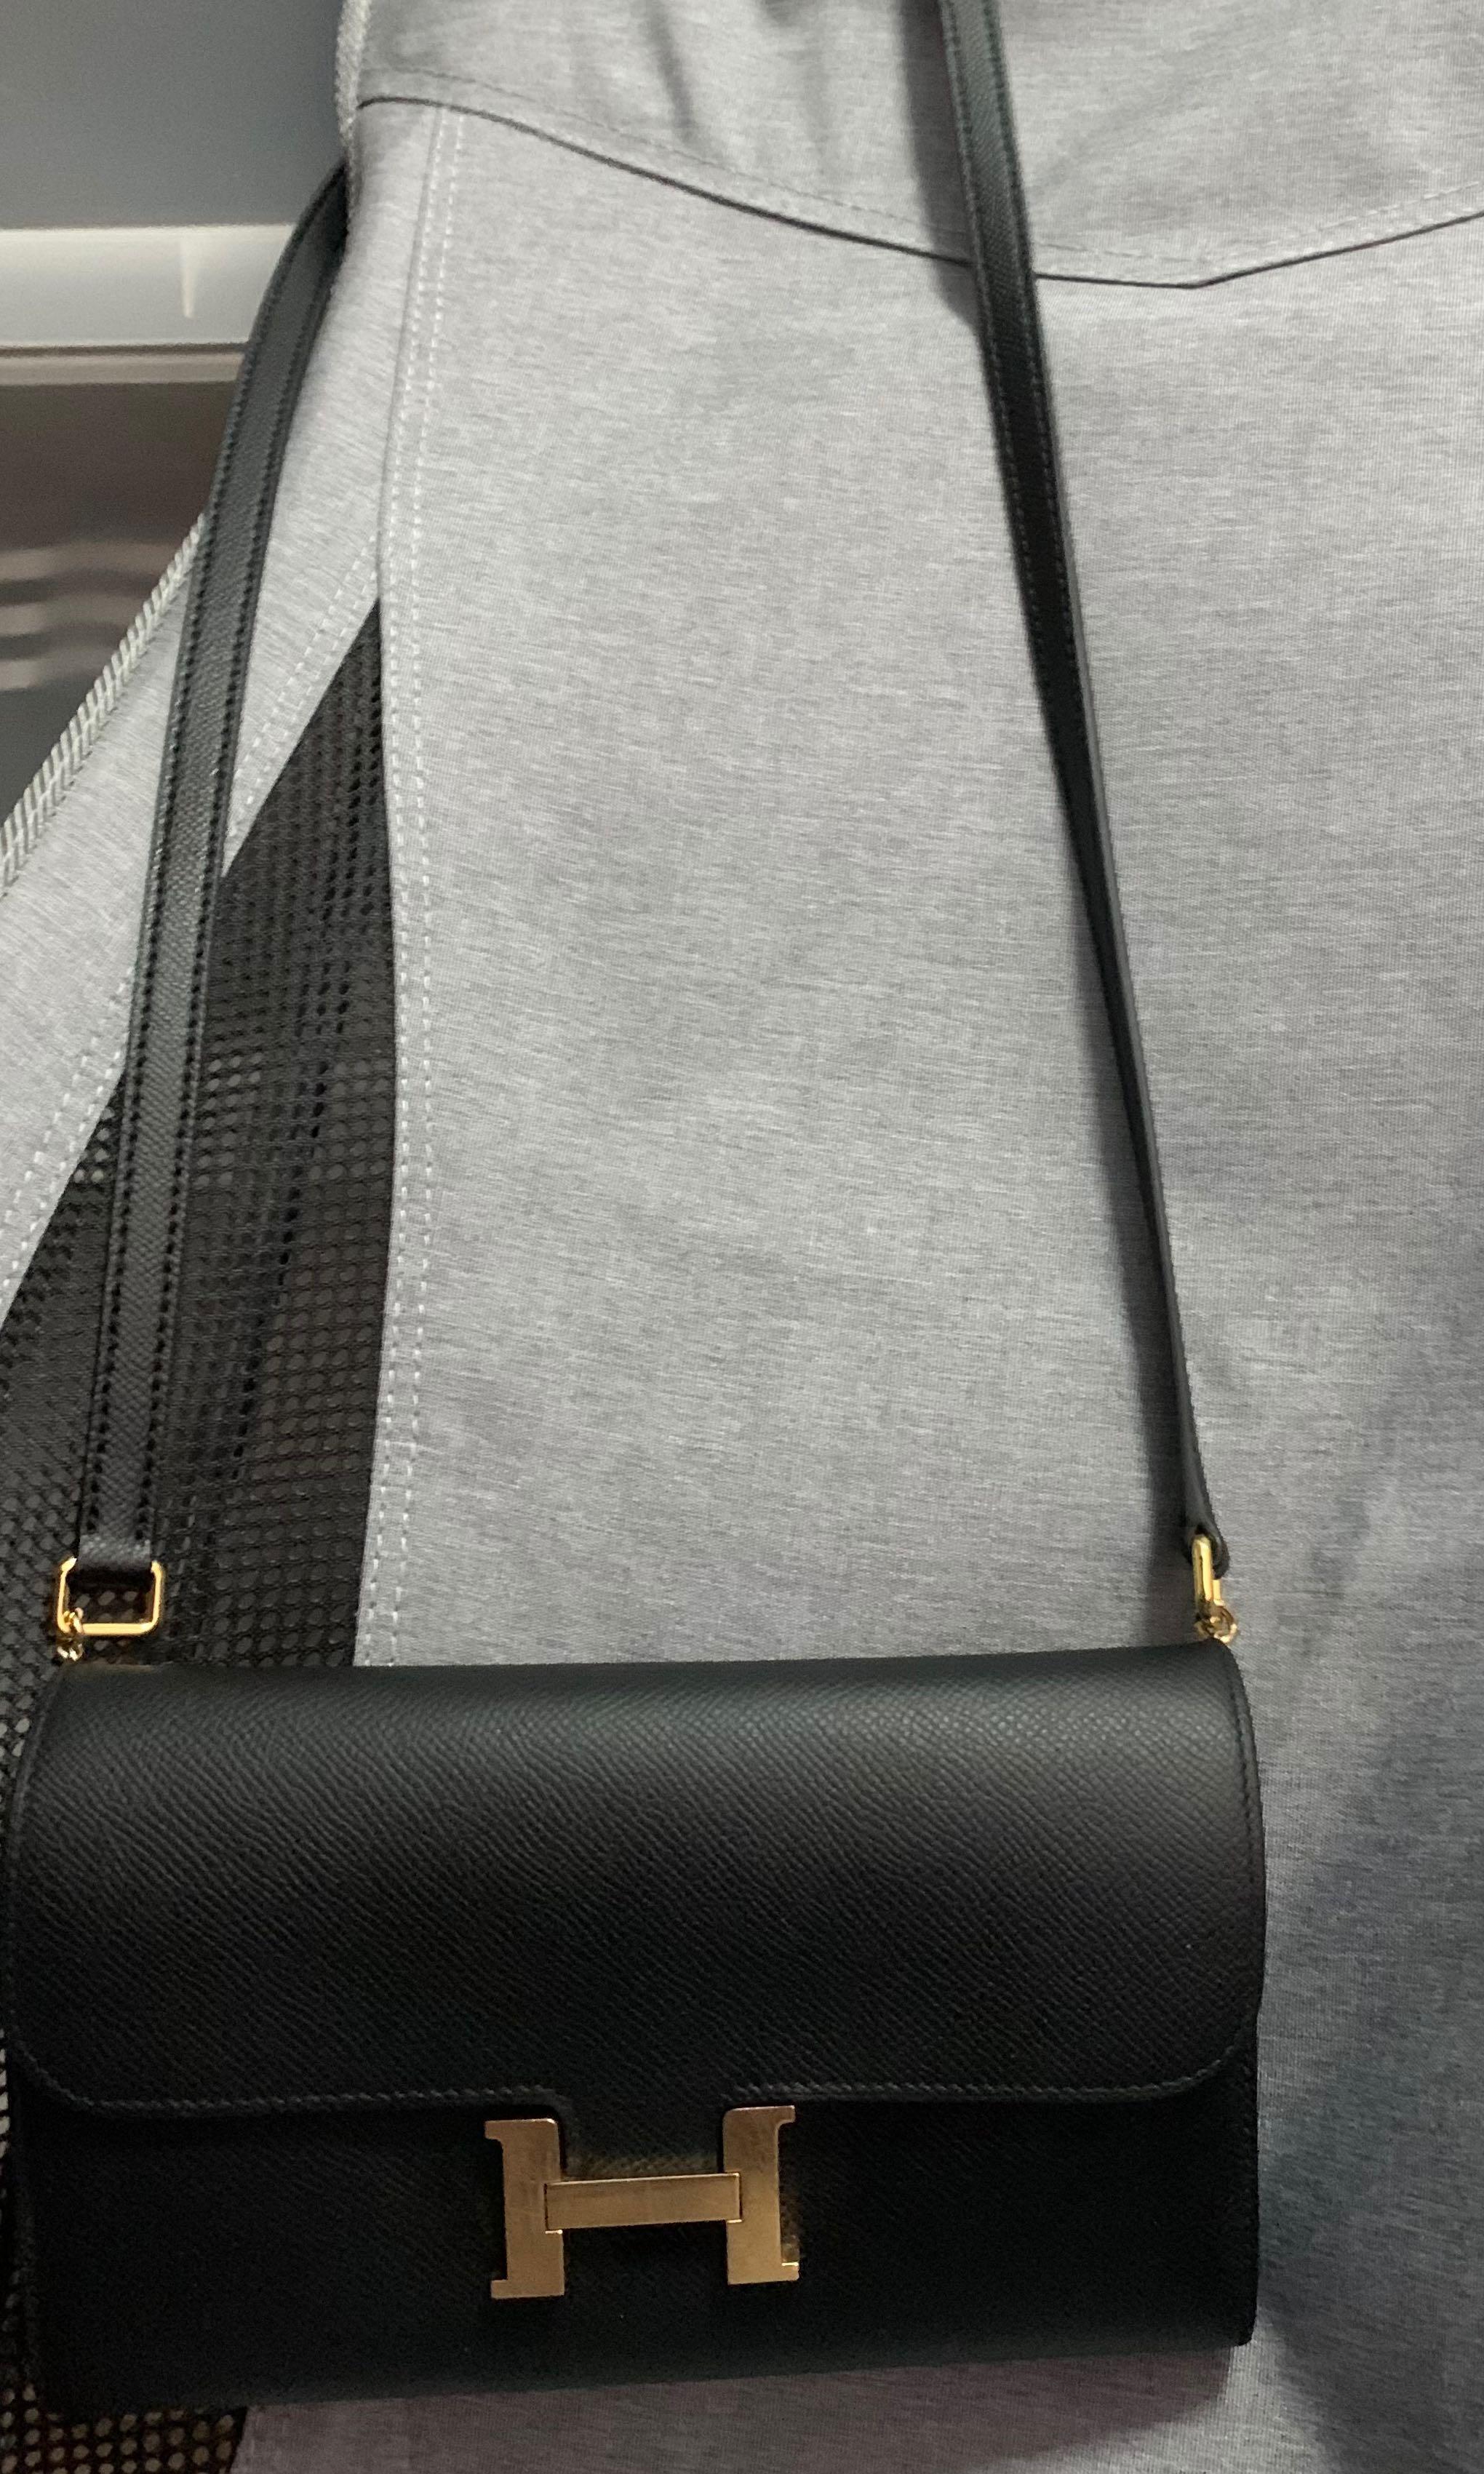 Fake Hermes Constance Elan Bag In Celeste Epsom Leather Replica